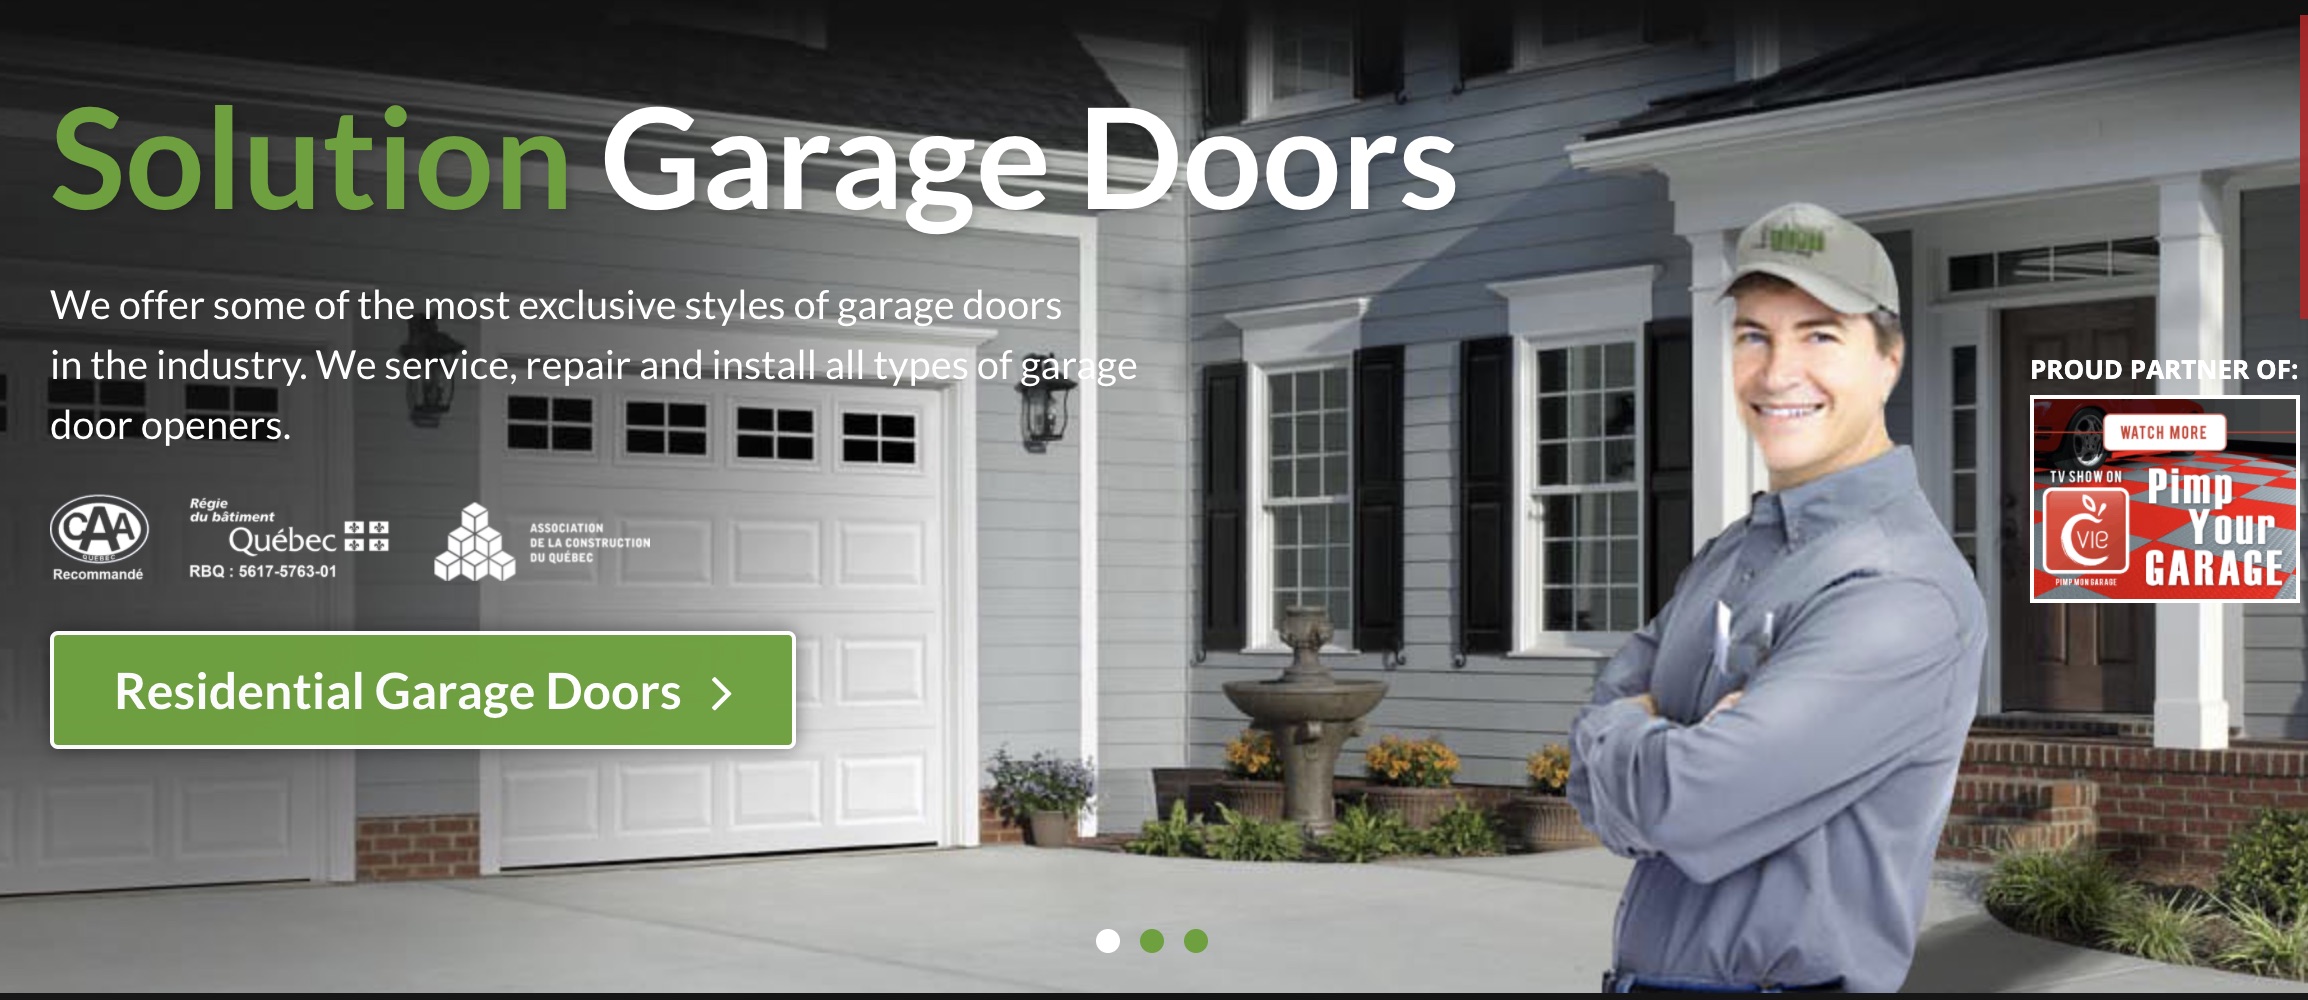 Solutions Garage Doors